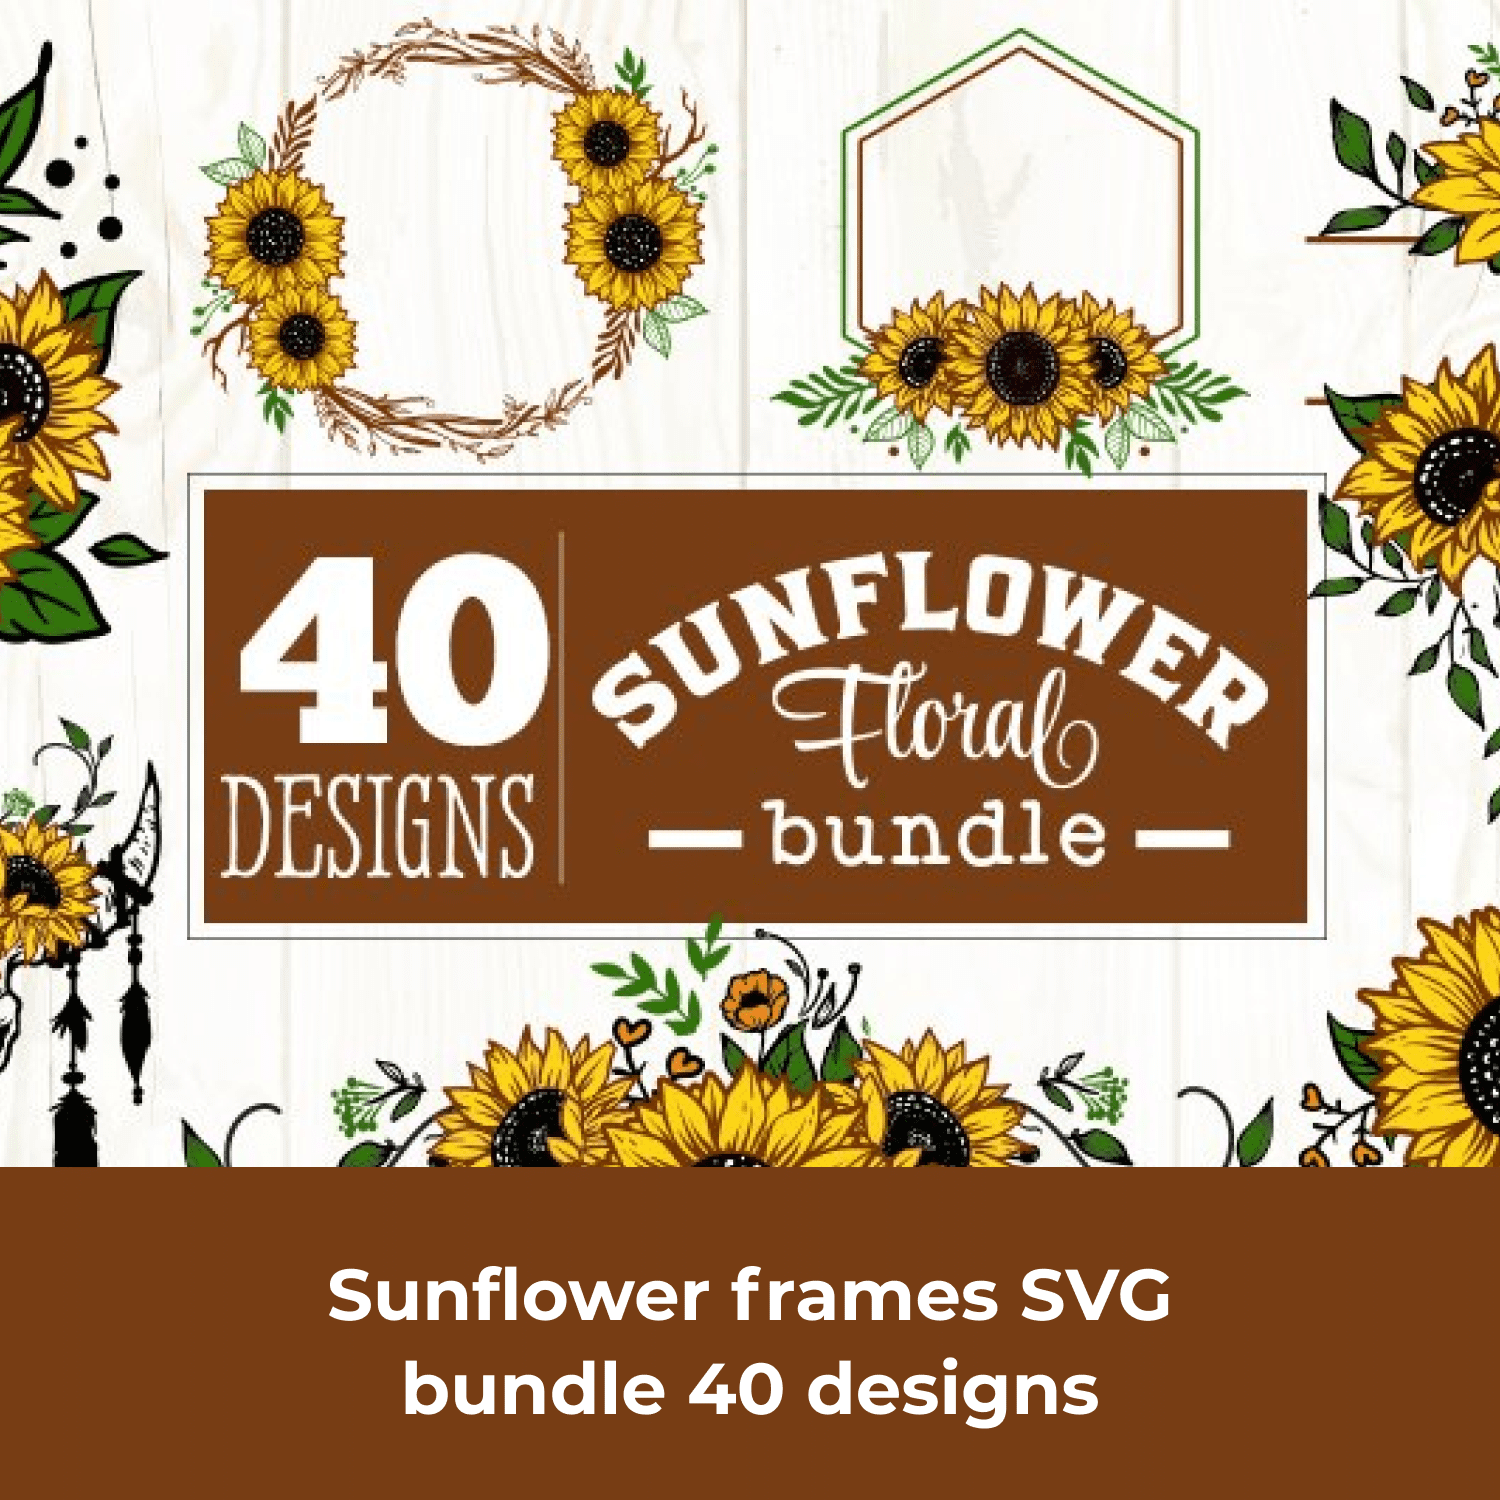 Sunflower Frames SVG Bundle 40 Designs cover.